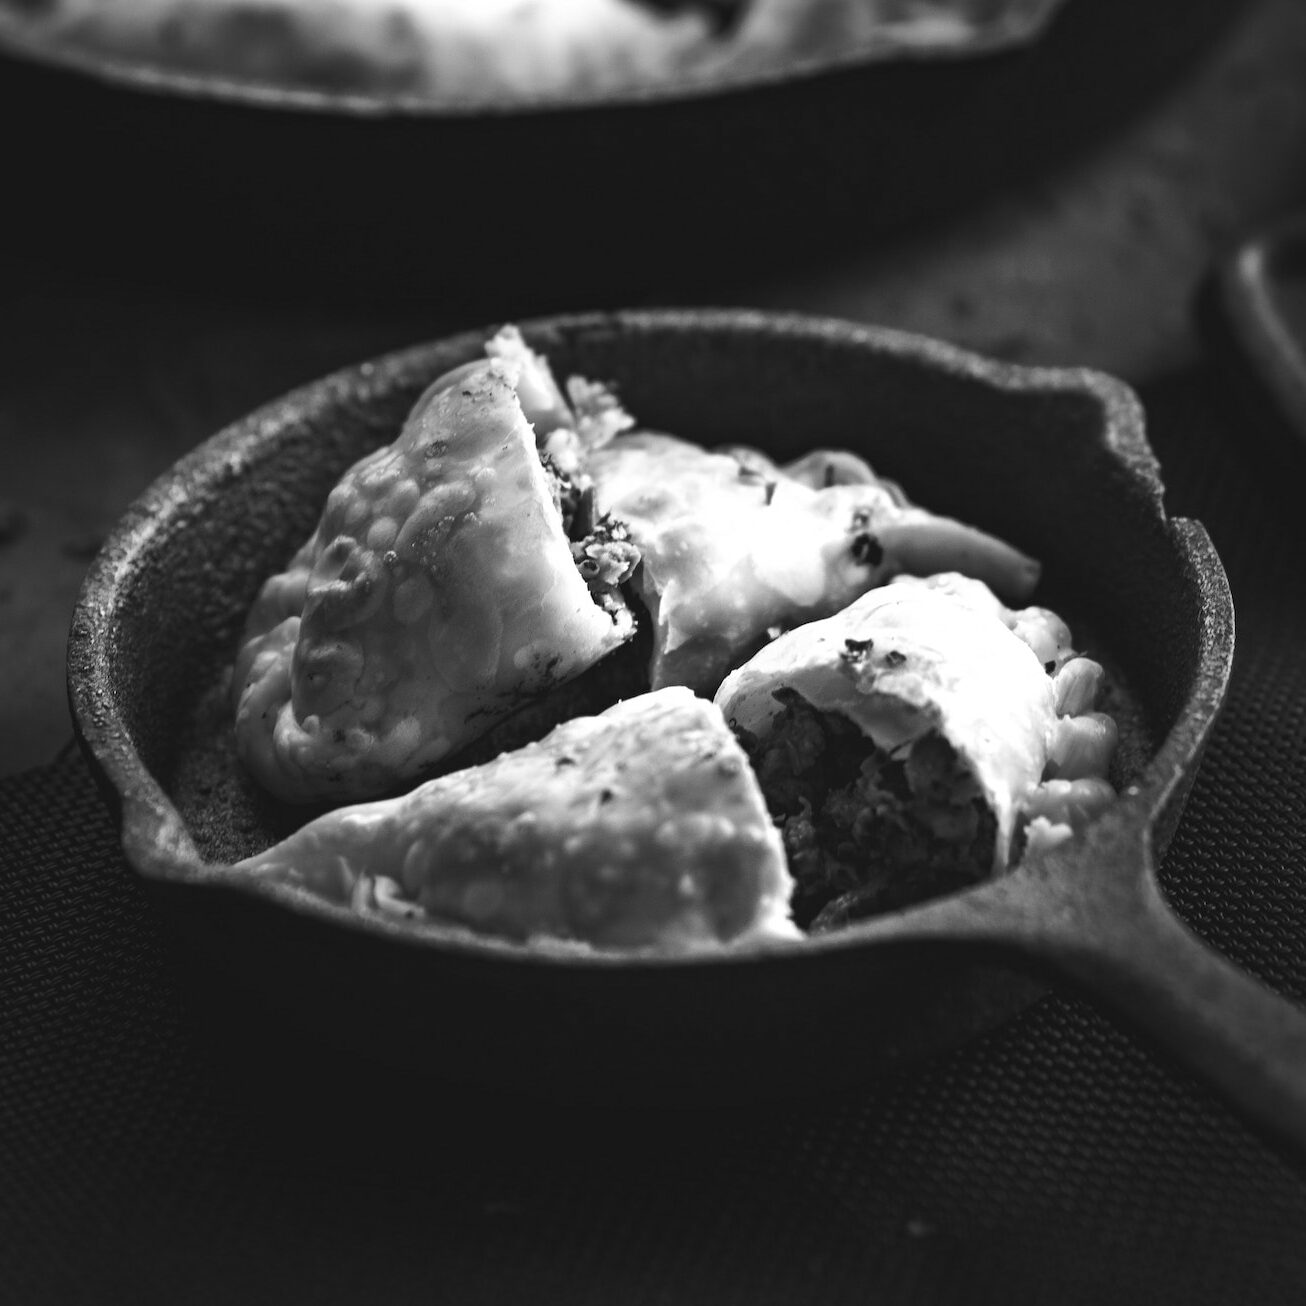 Empanadas in a pan